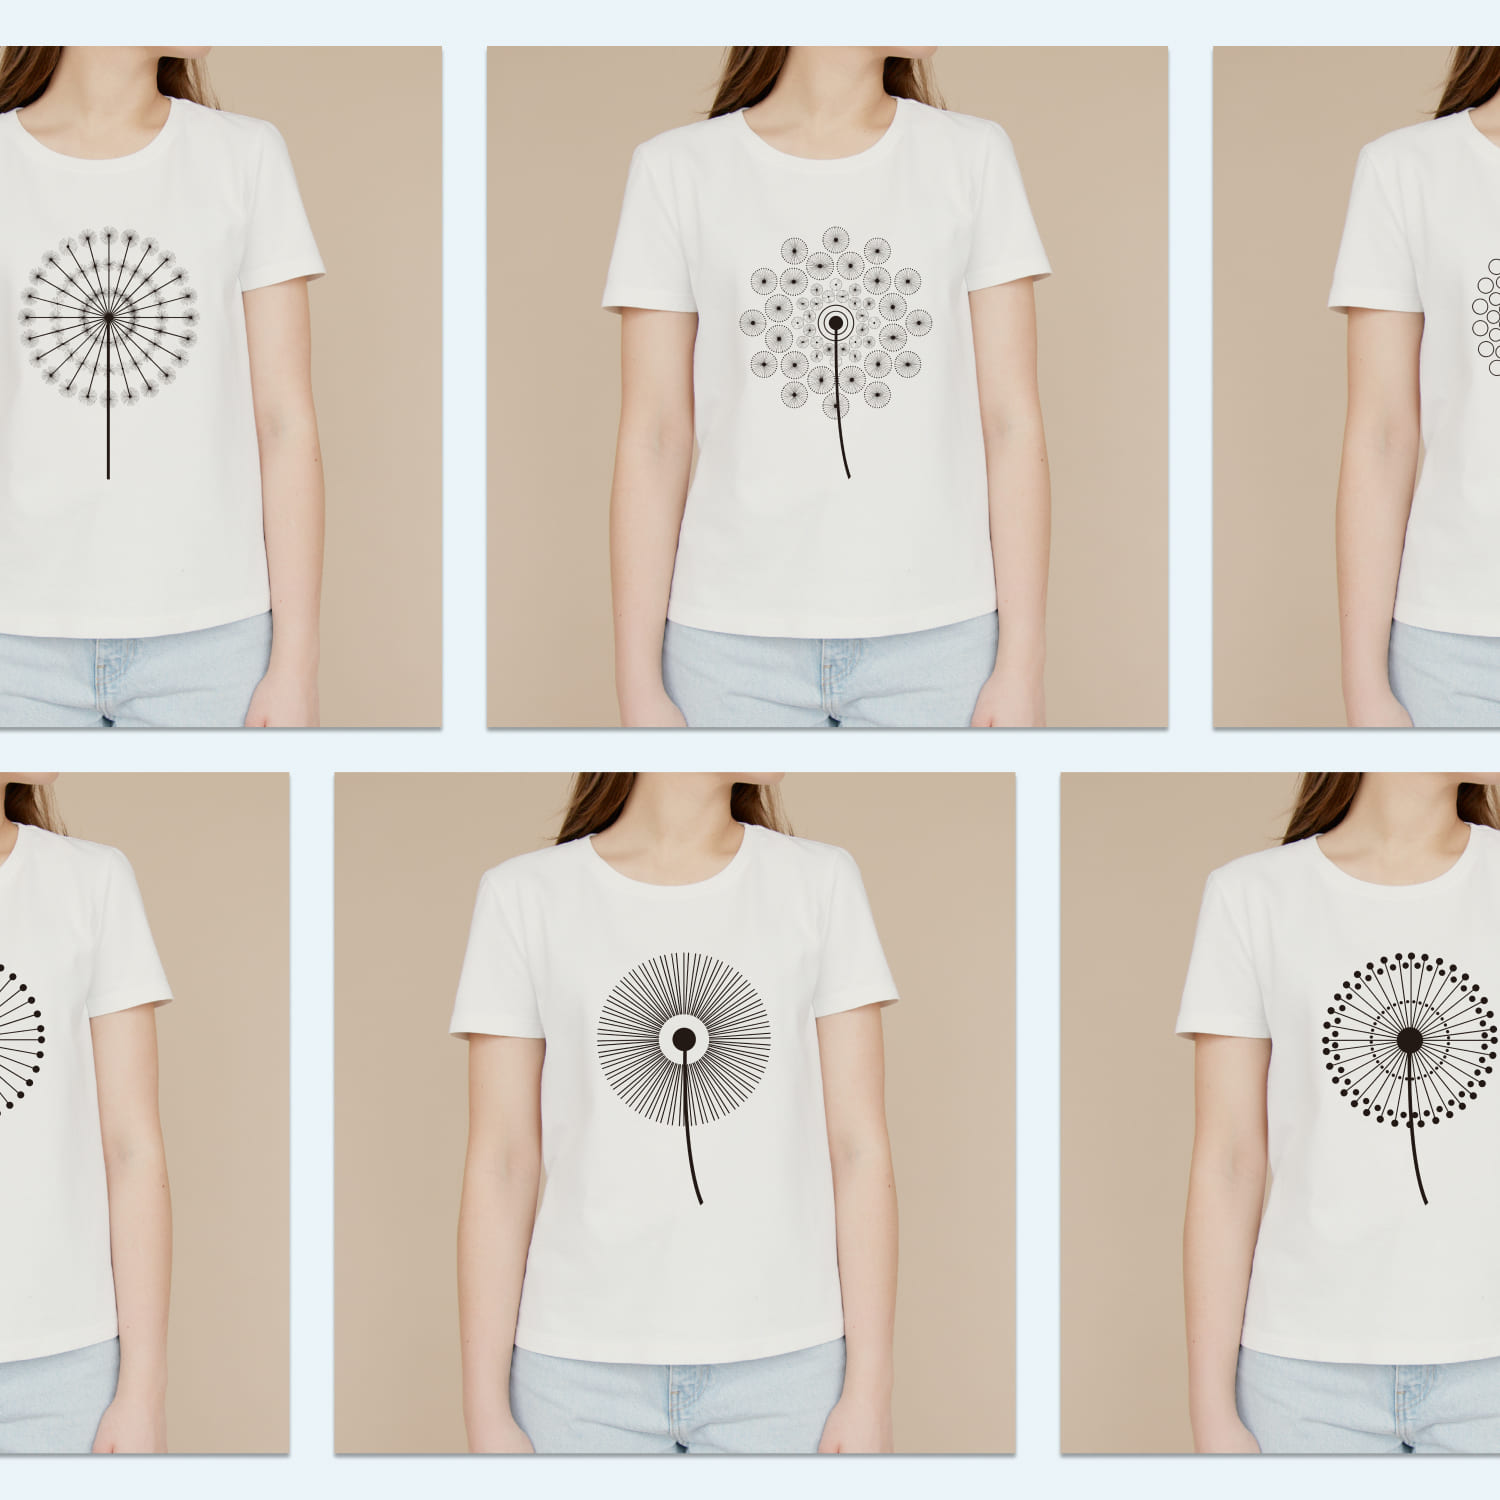 Silhouette Dandelion T-shirt Designs Bundle Cover.